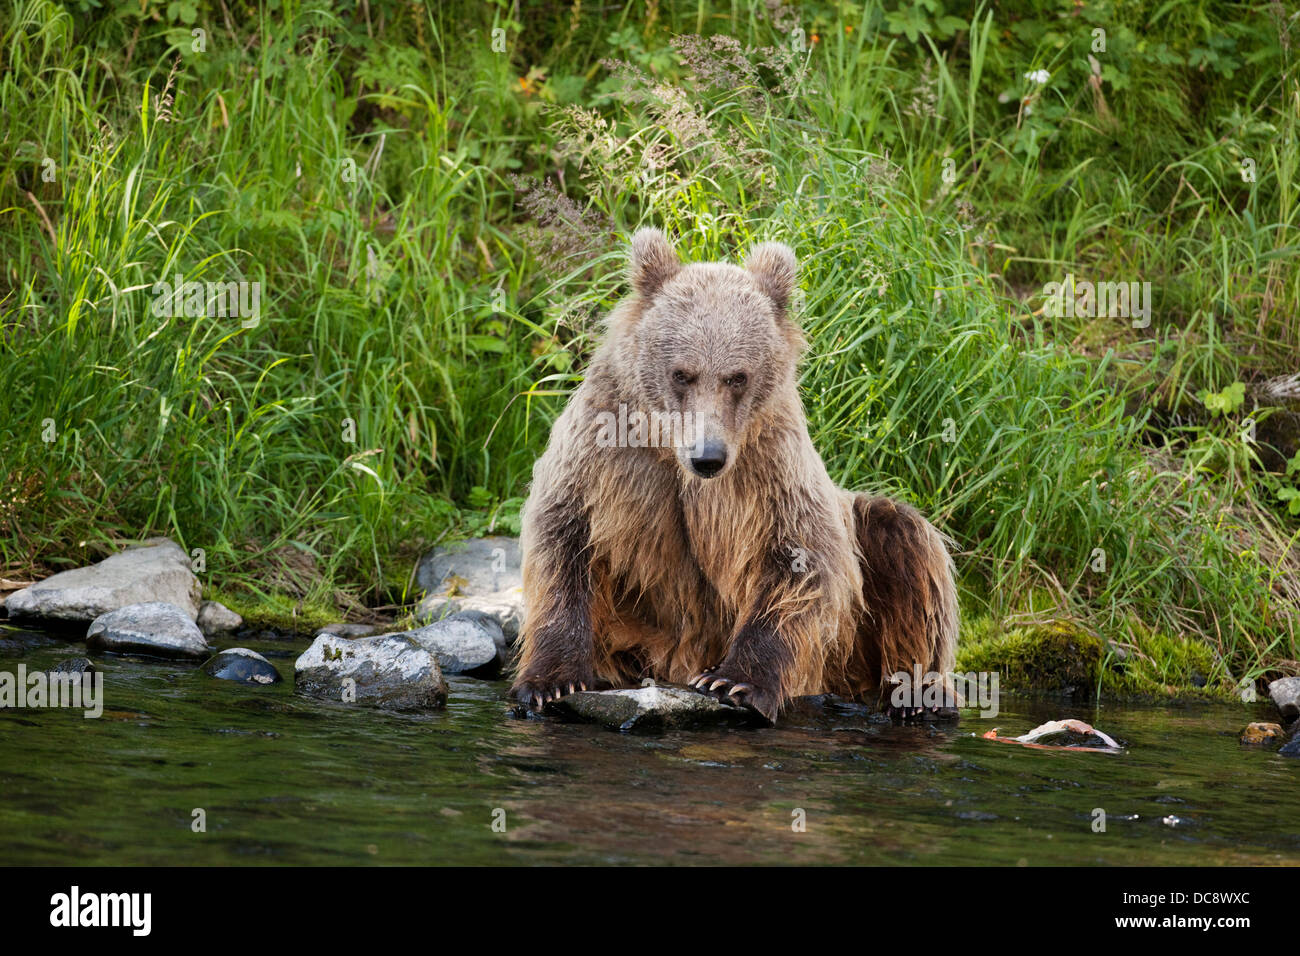 Une jeune femelle ours brun assis sur le bord du fleuve russe et looking at camera, Southcentral Alaska, l'été Banque D'Images